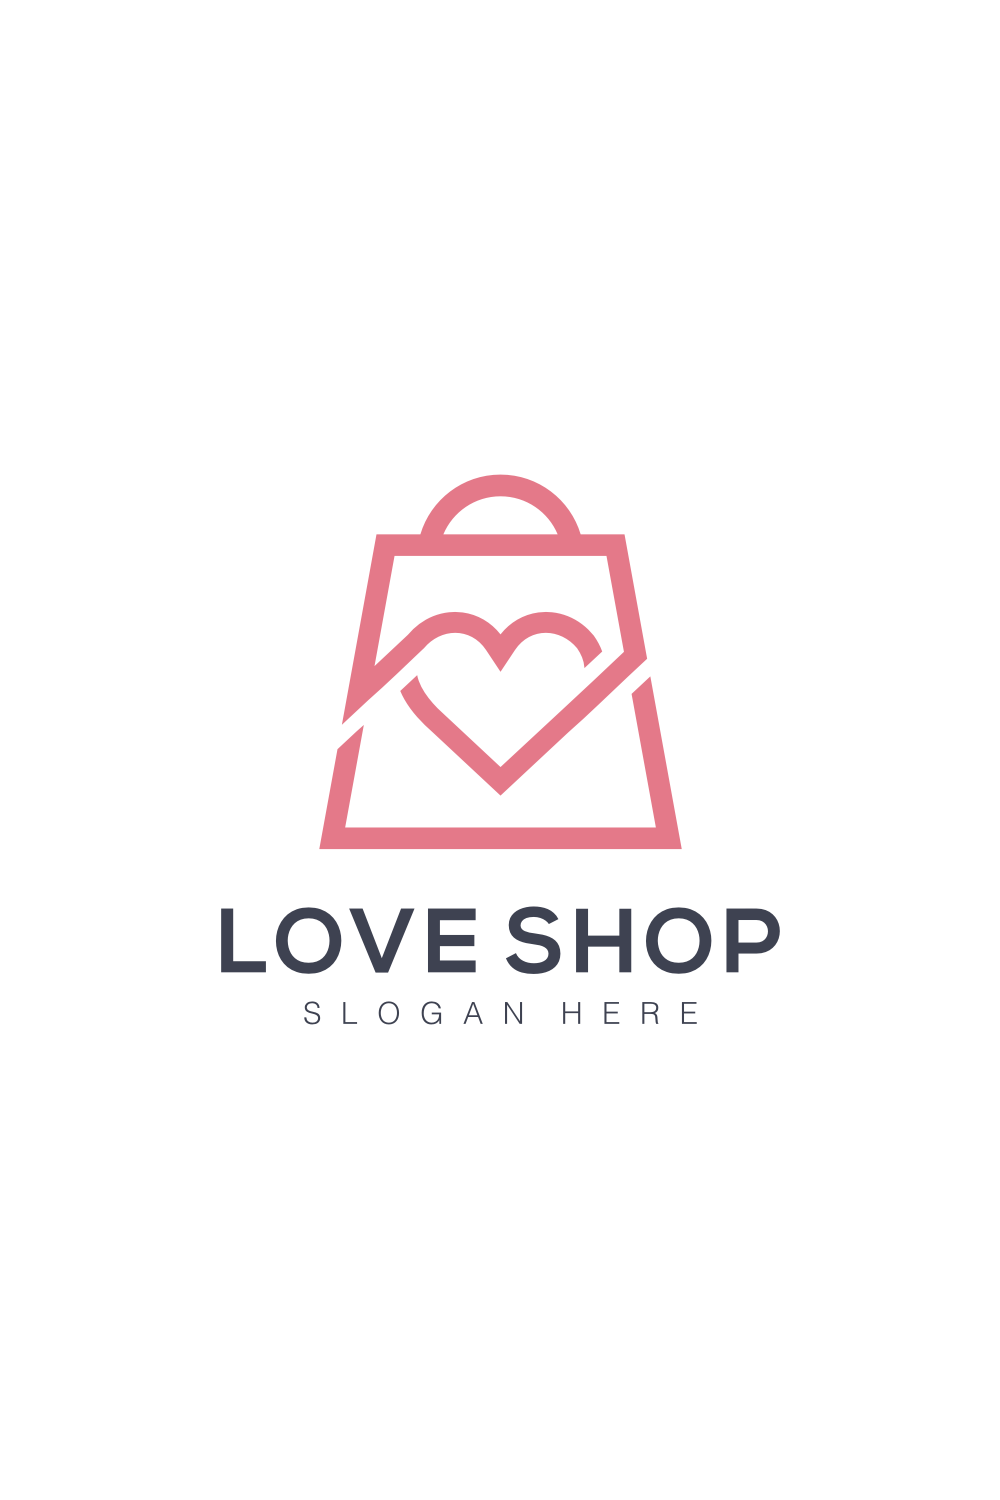 Love Shop Bag Logo Vector Design pinterest image.